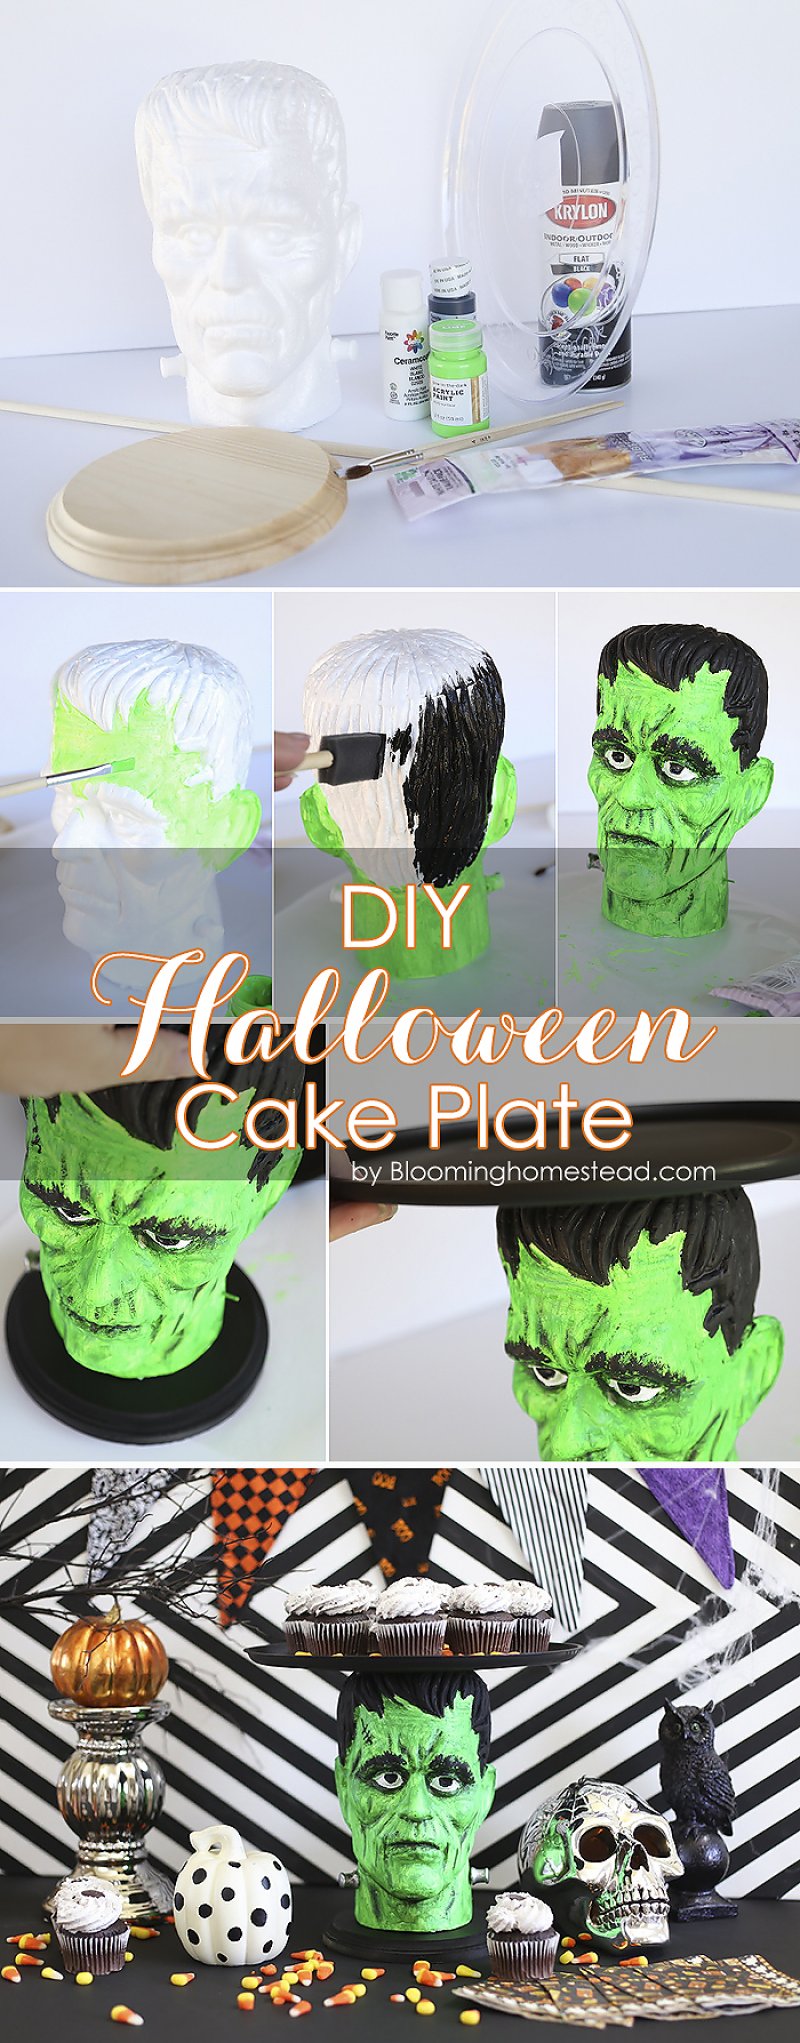 DIY Halloween Cake Plate by Blooming-Homestead.